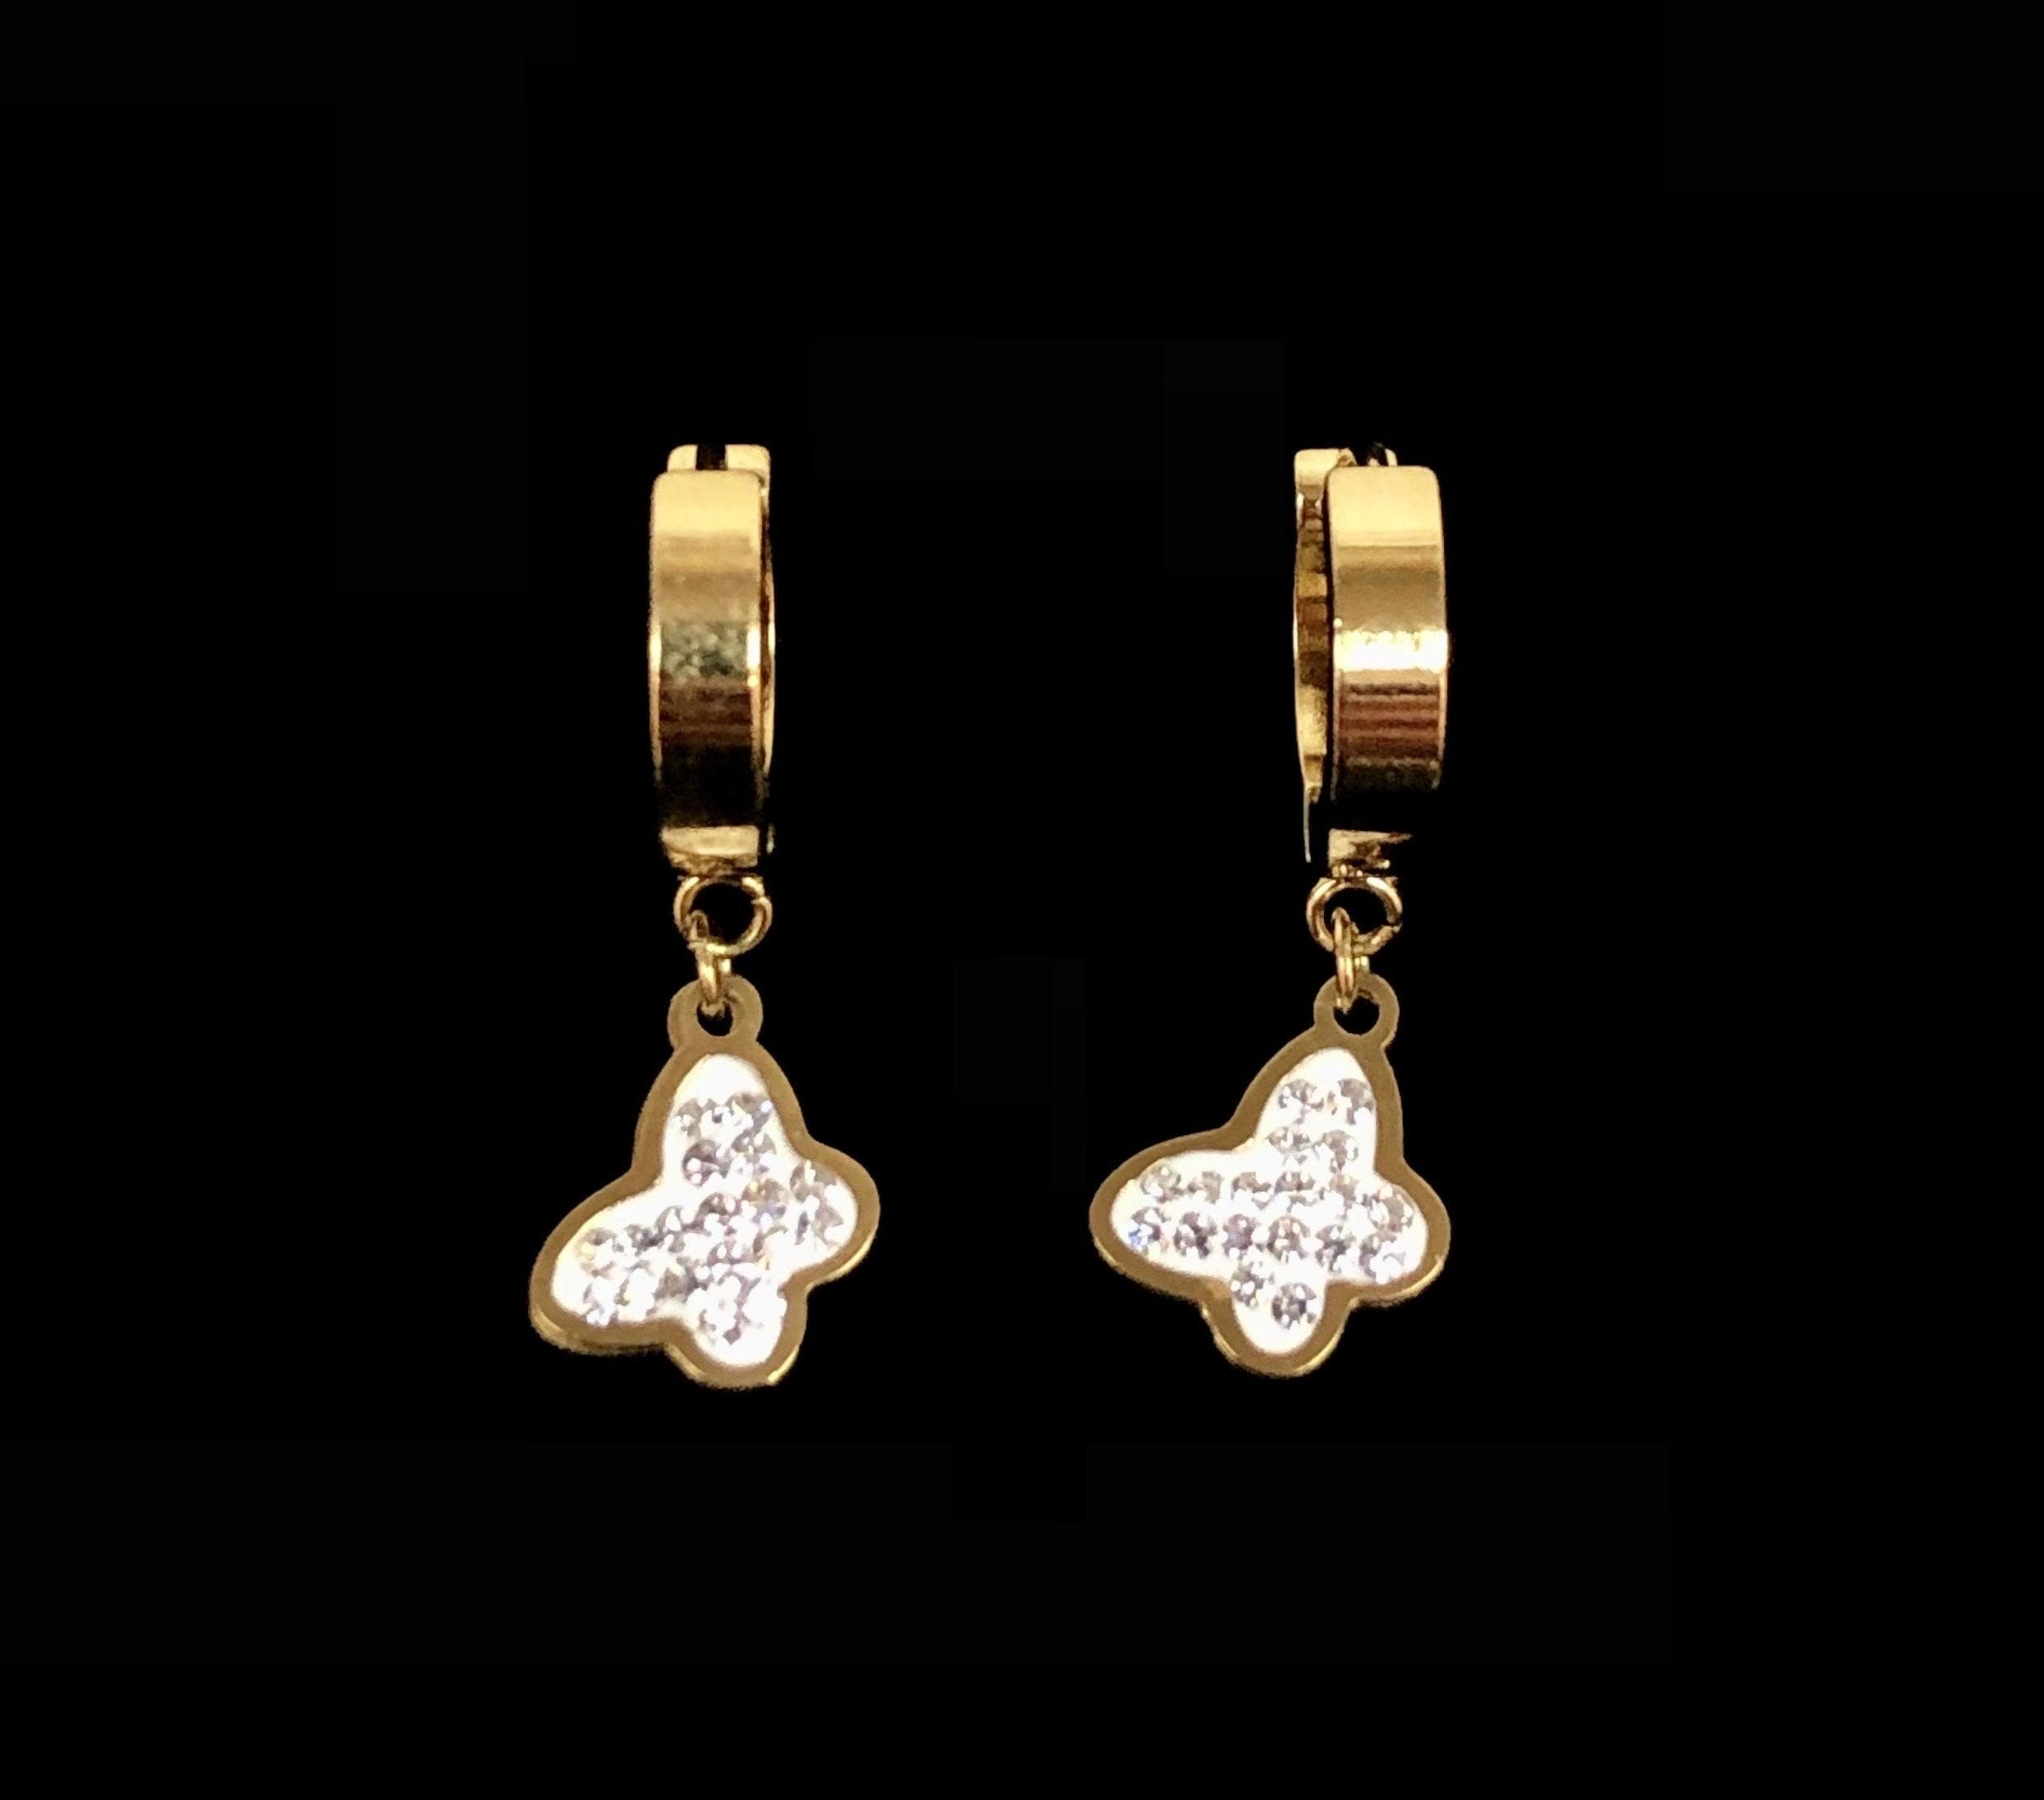 OLE 0105 -18K Gold Filled Oro Laminado DANGLE EARRINGS, EARRINGS, NEW, STAINLESS STEEL - KUANIA